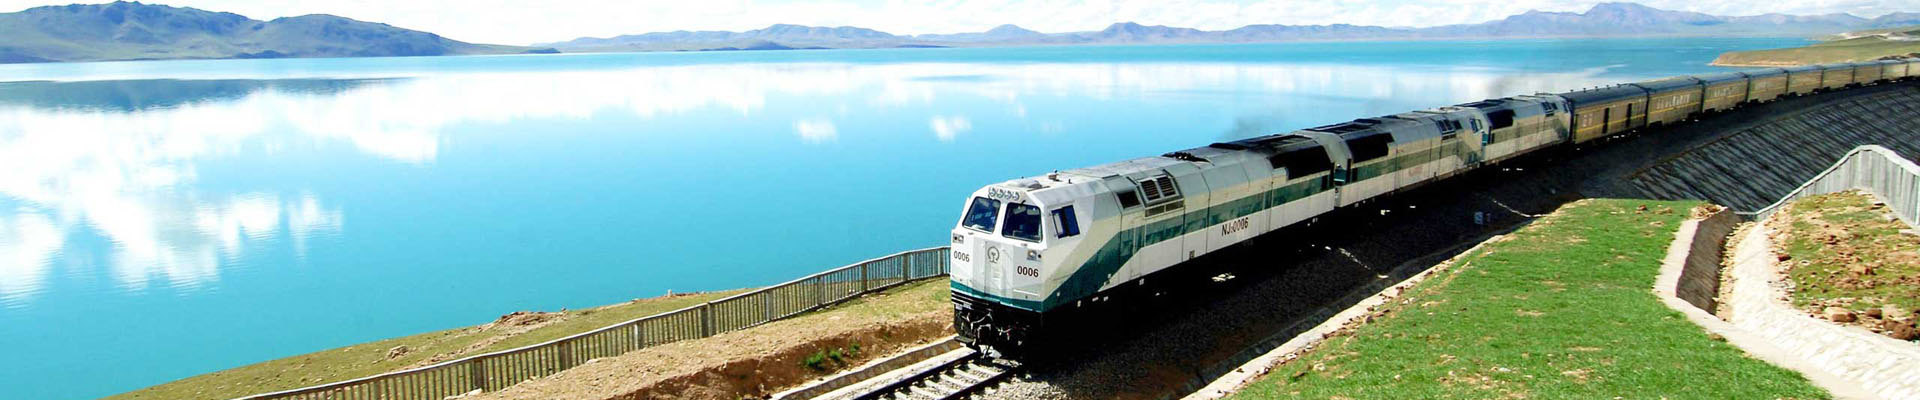 Sky train from China to Tibet via Qinghai Tibet Railway